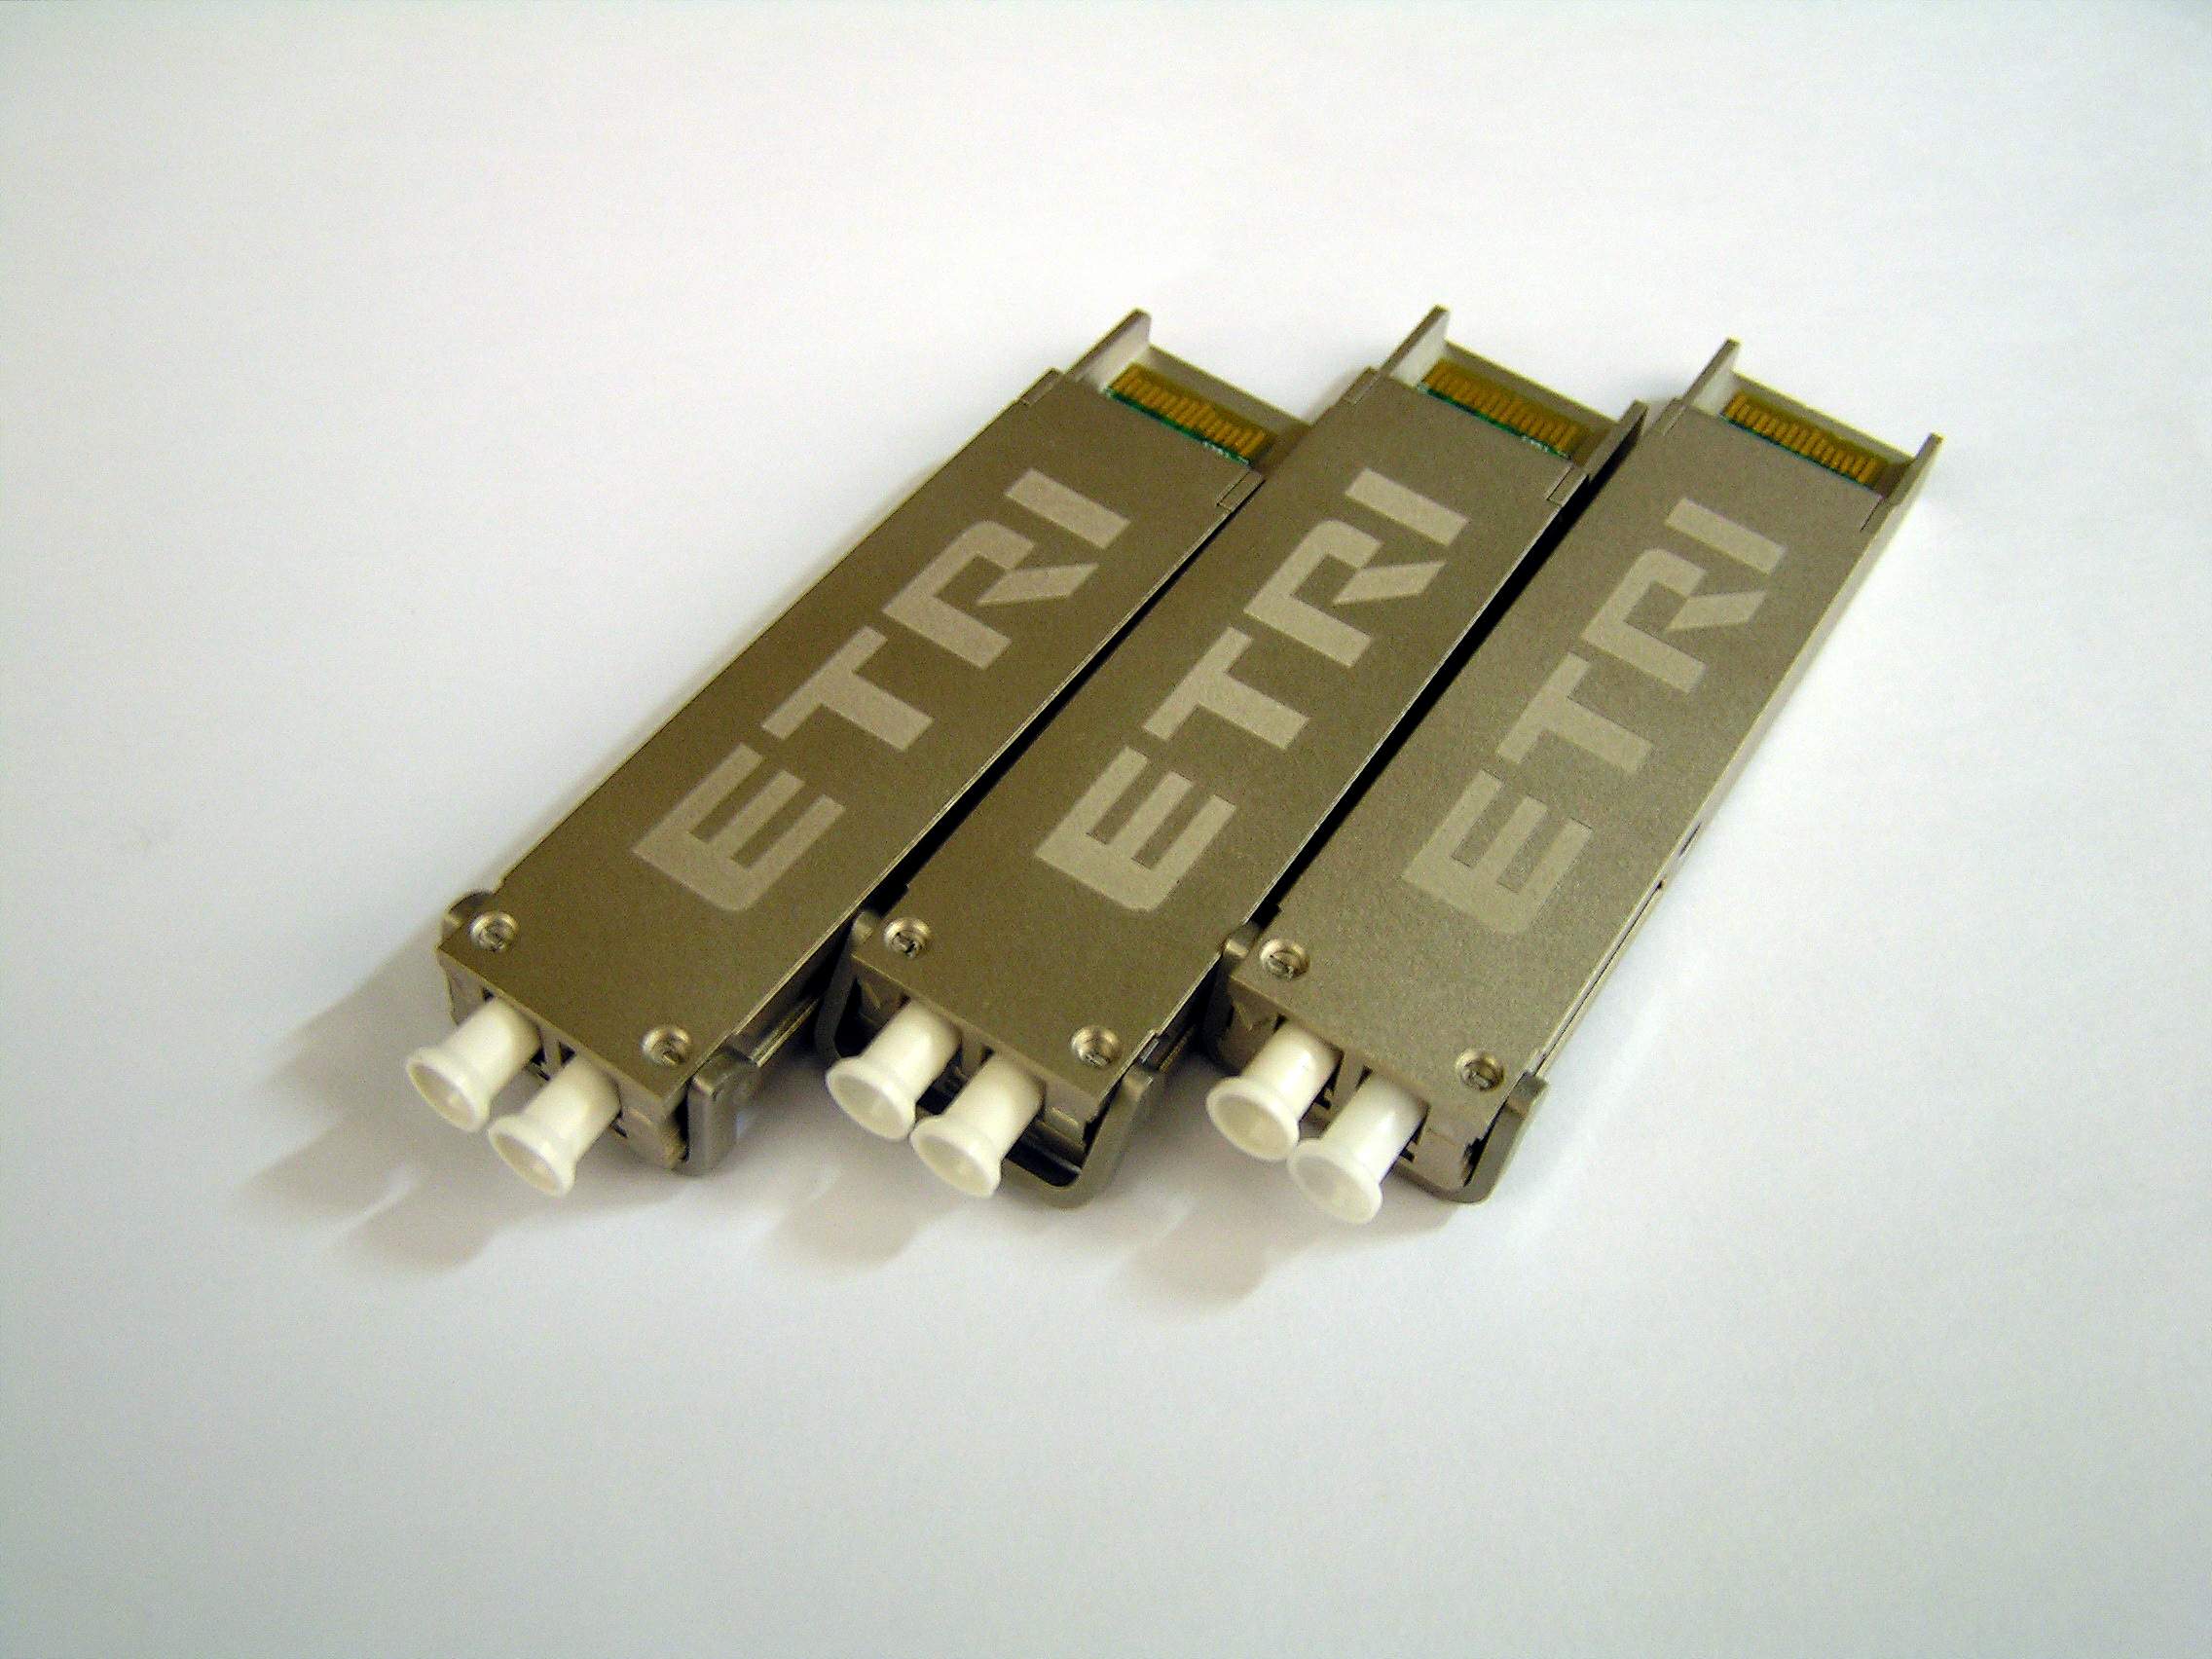 ETRI,초소형10G 광통신 모듈개발 [이미지]